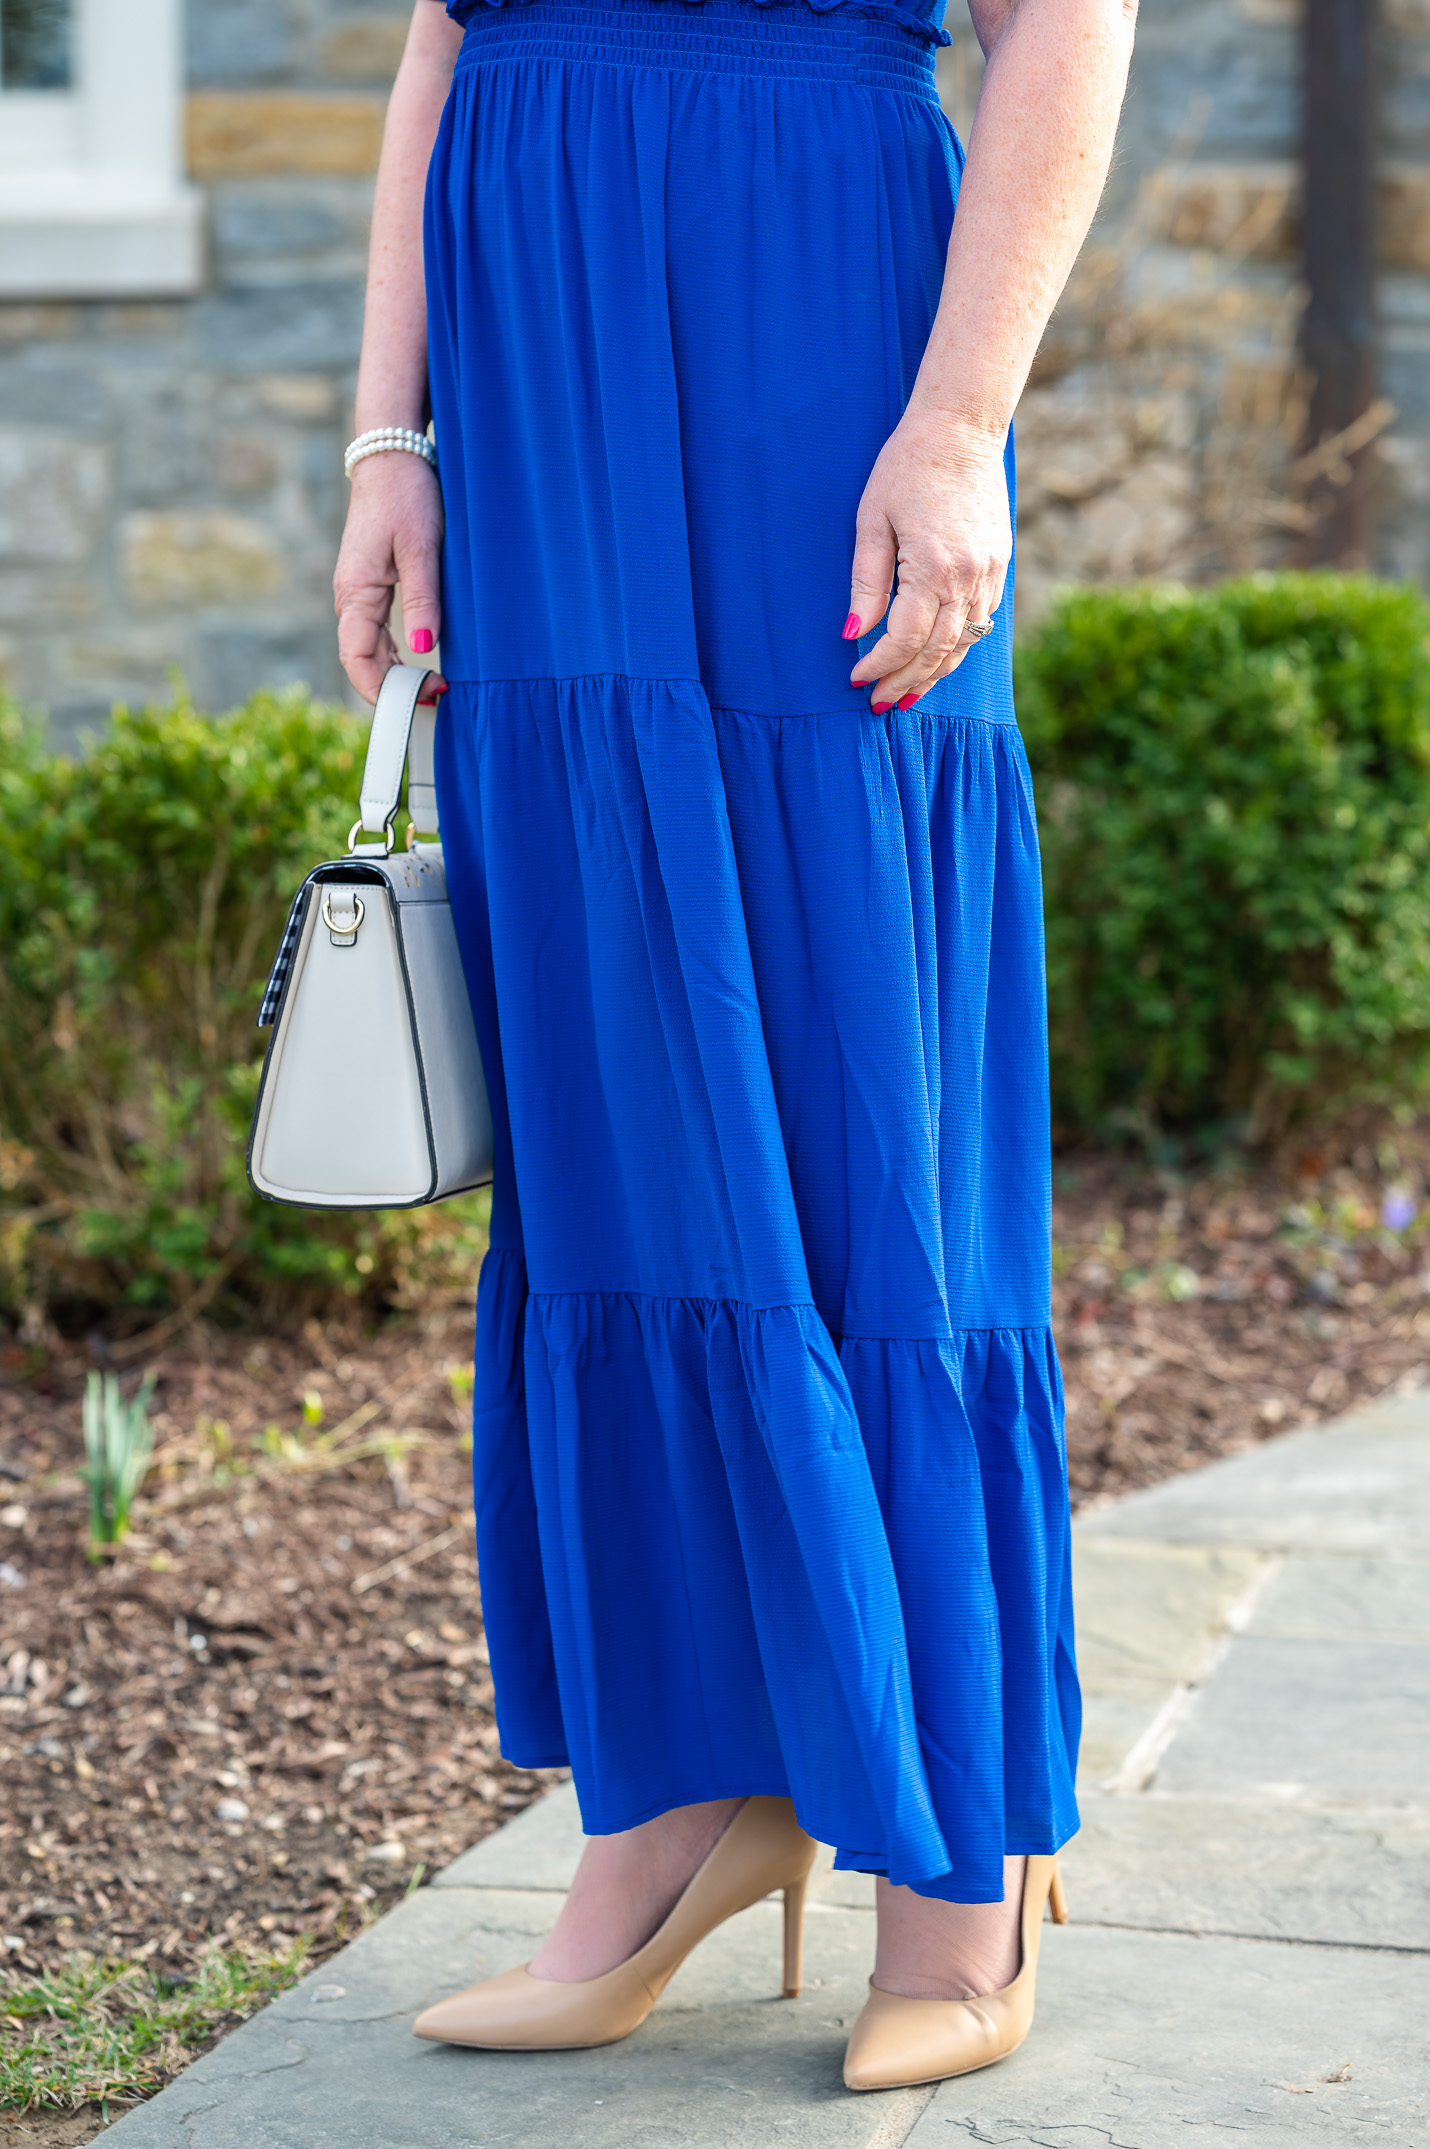 Skirt of blue Dress